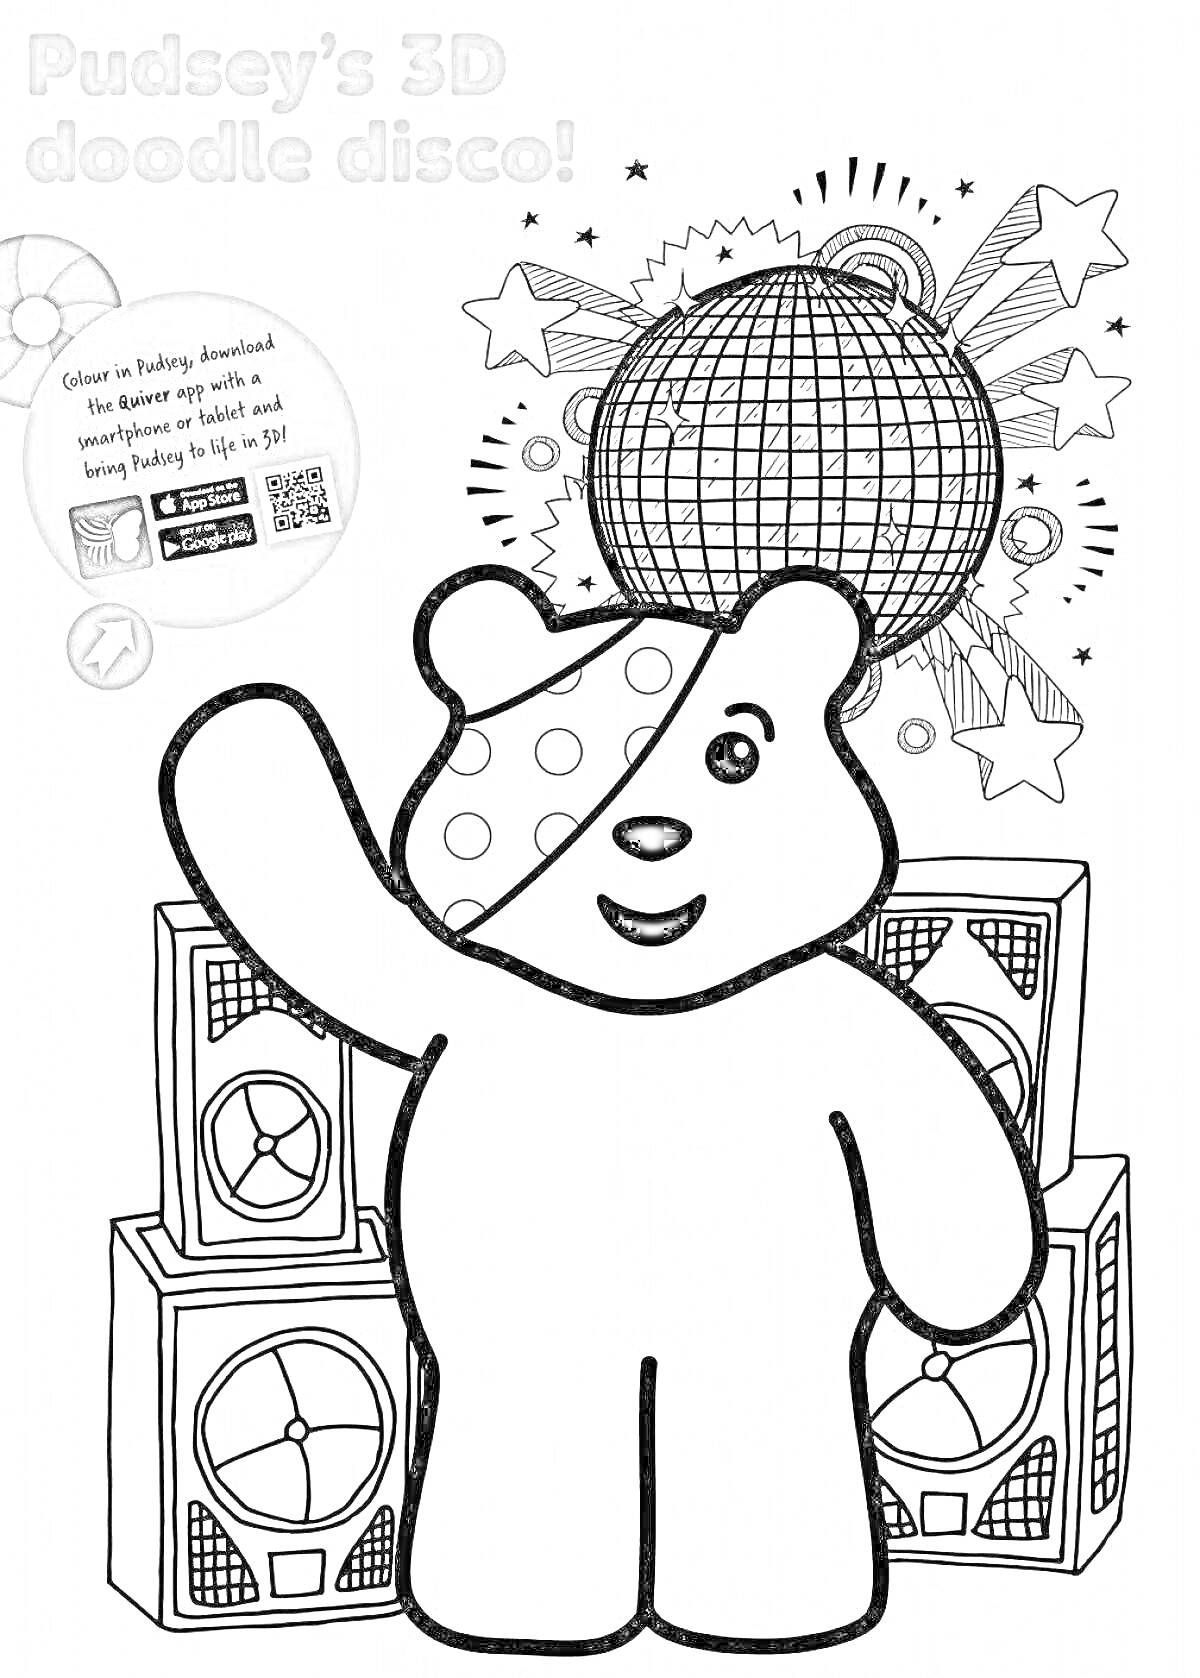 Раскраска Pudsey на дискотеке. На изображении: медвежонок Pudsey, две колонки, диско-шар, звезды и музыкальные ноты на заднем плане.